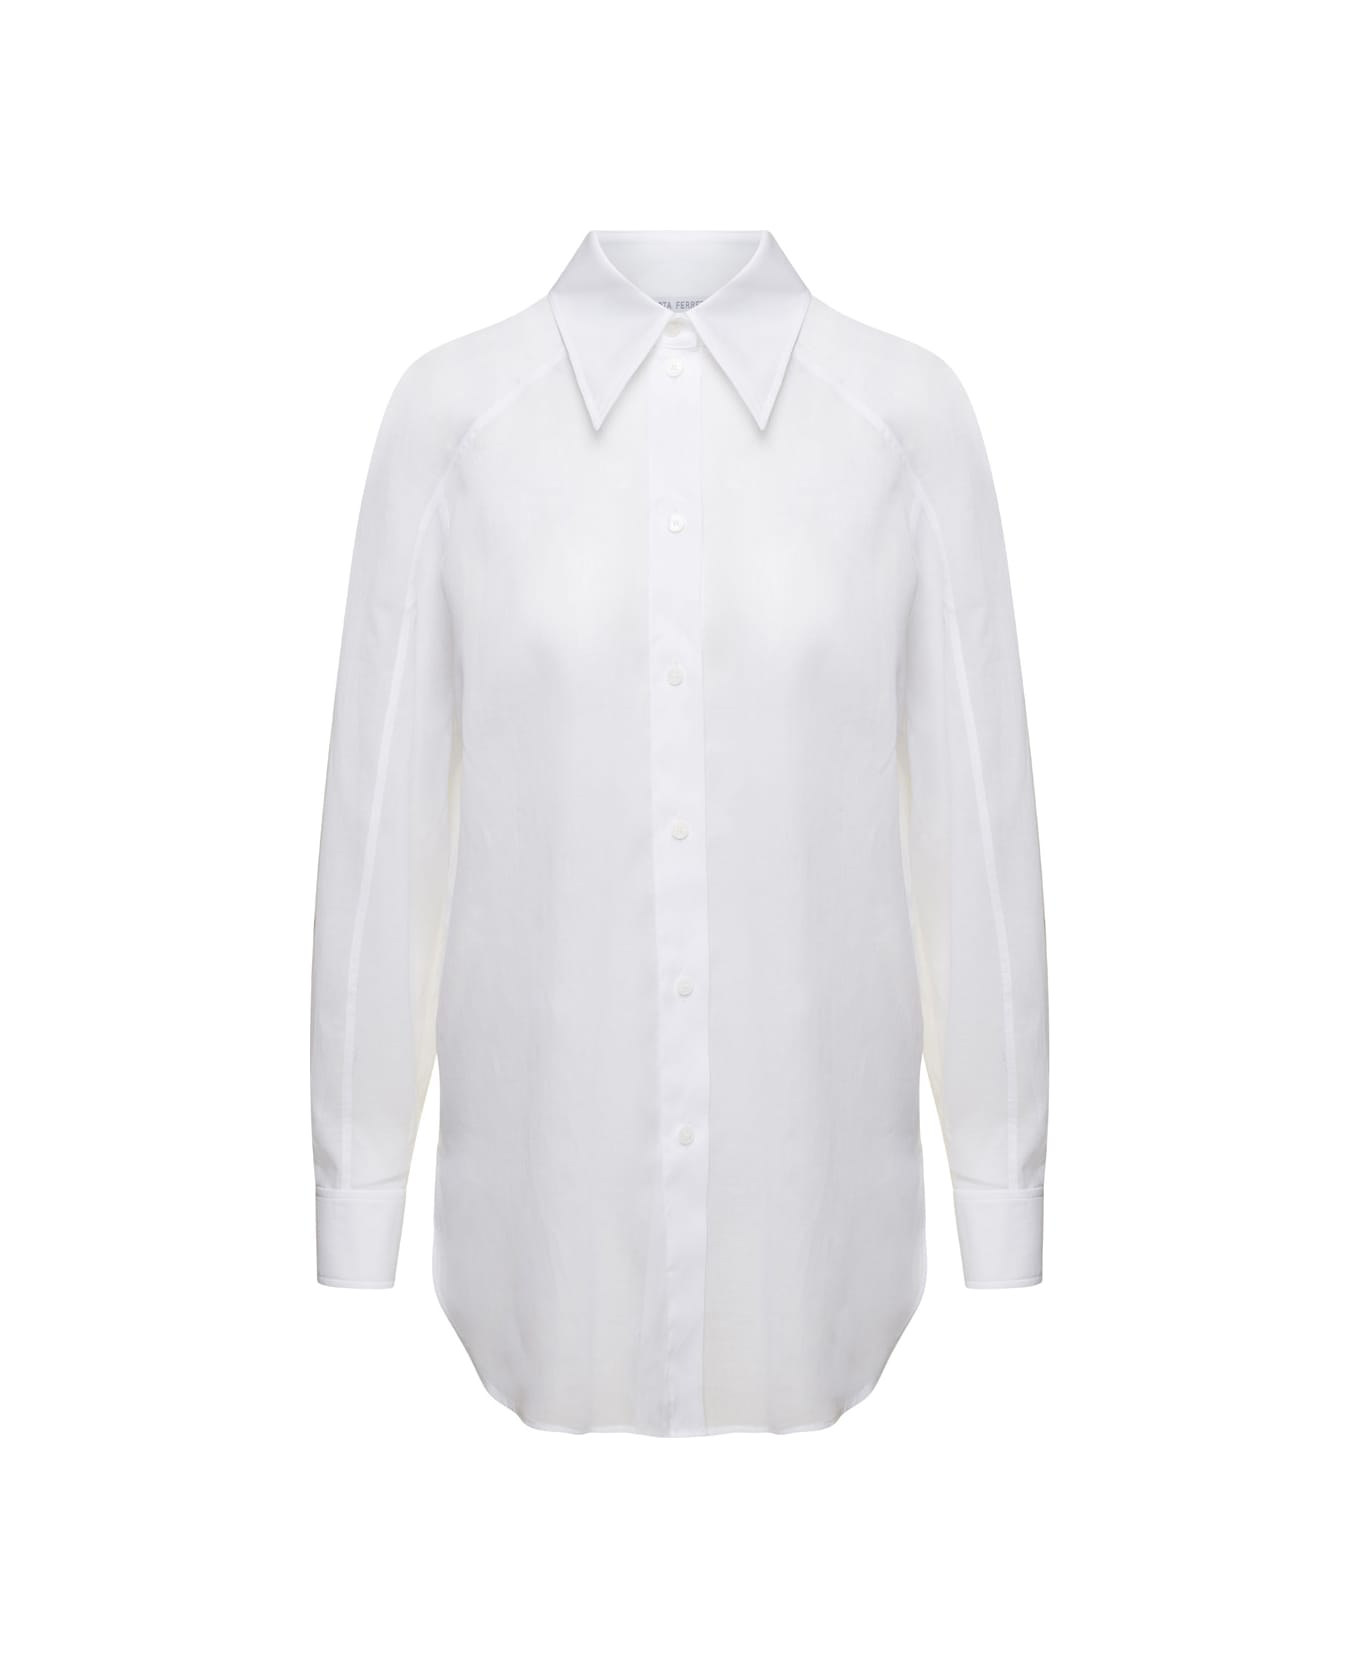 Alberta Ferretti Round Hem Plain Formal Shirt - White シャツ